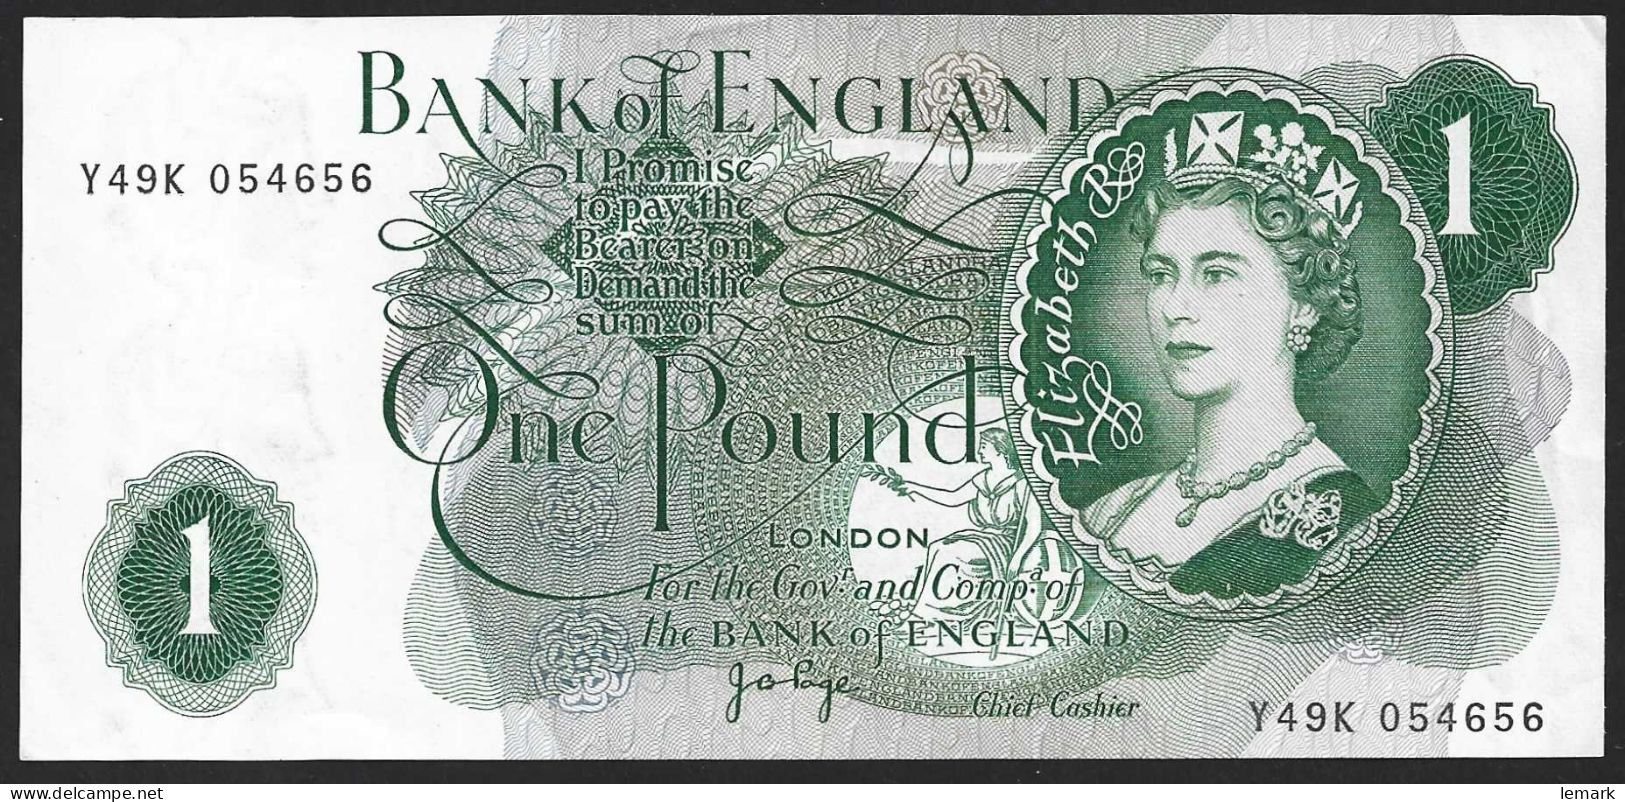 United Kingdom 1 Pound 1960-77 P374g  XF/AUNC - 1 Pond